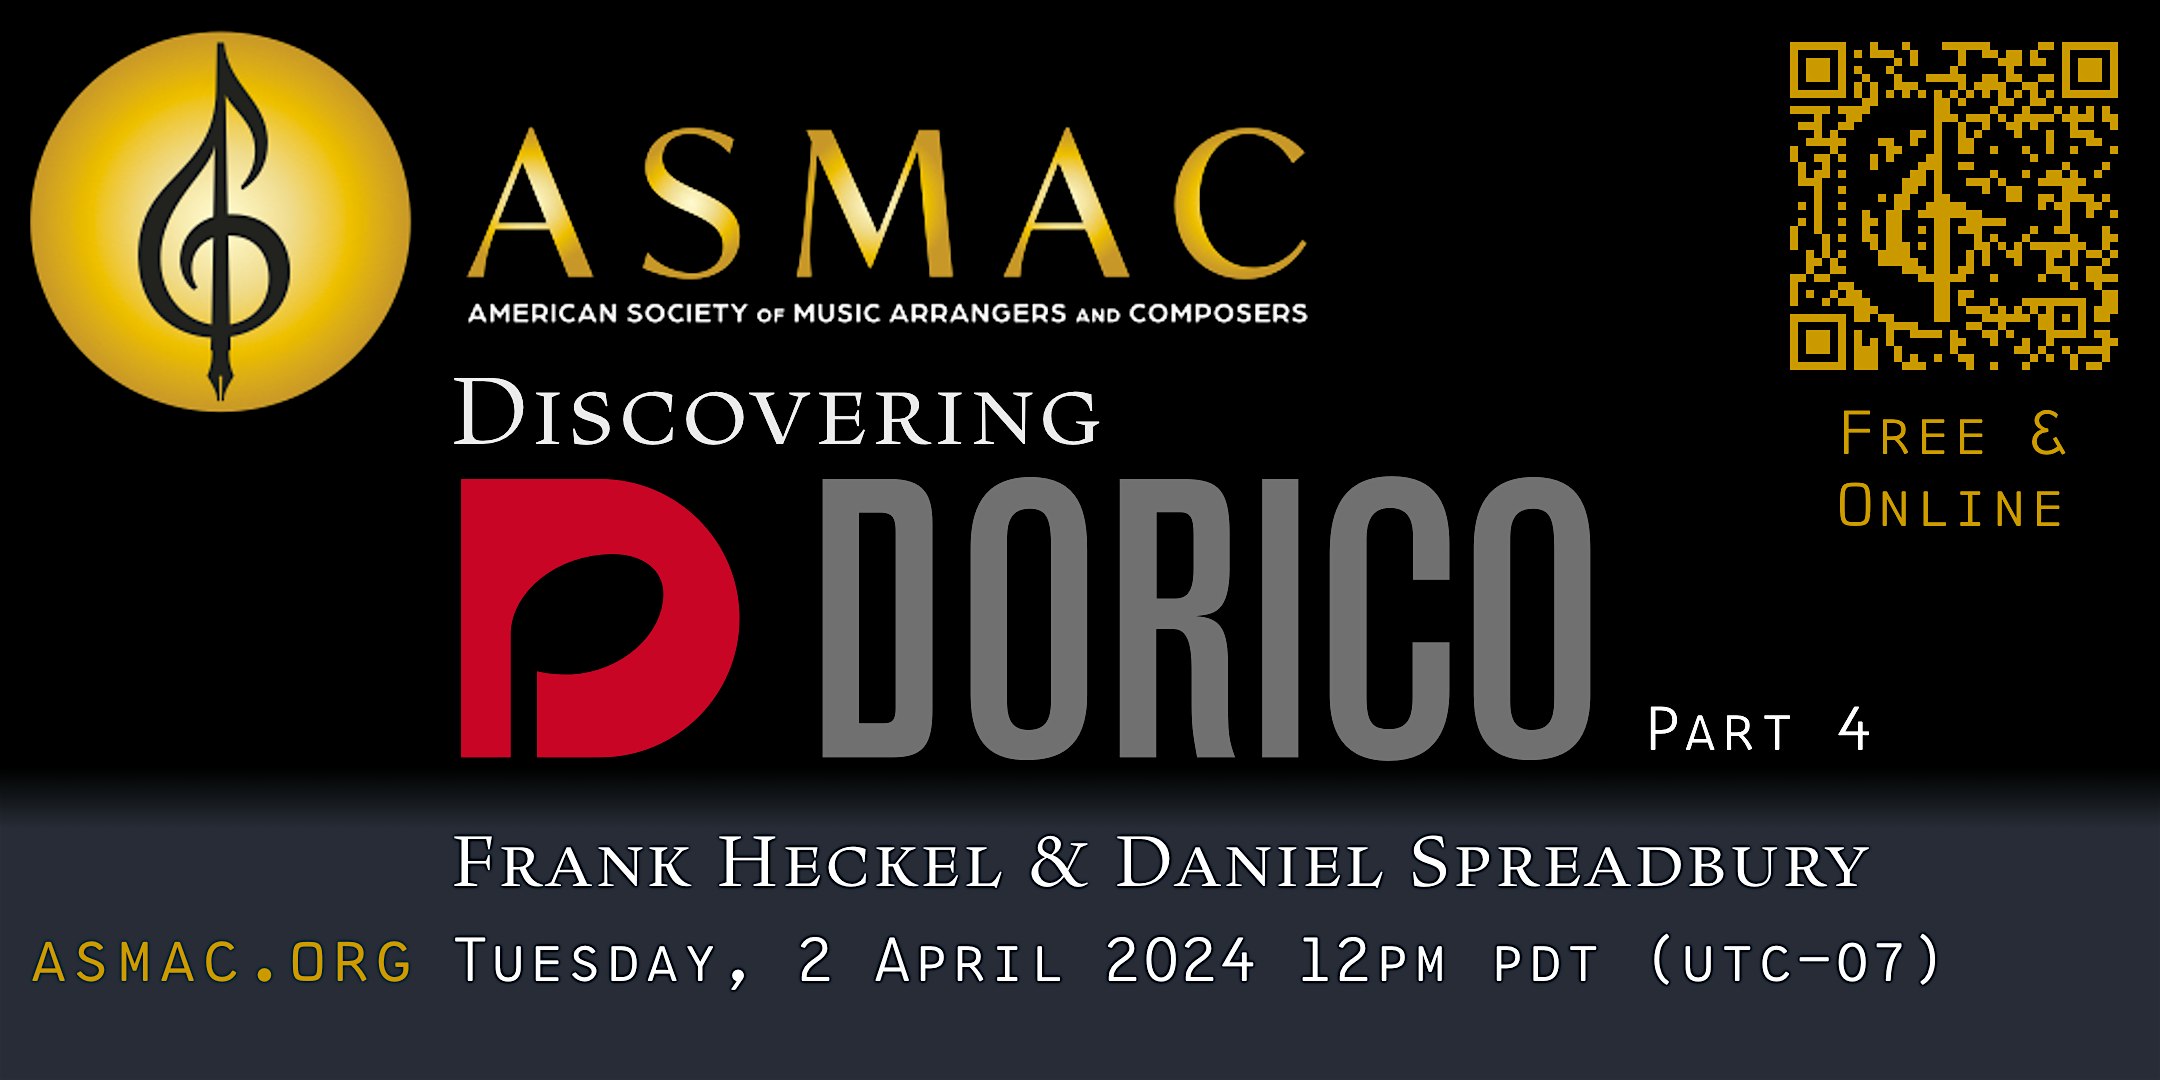 ASMAC presents Discovering Dorico with Frank Heckel & Daniel Spreadbury